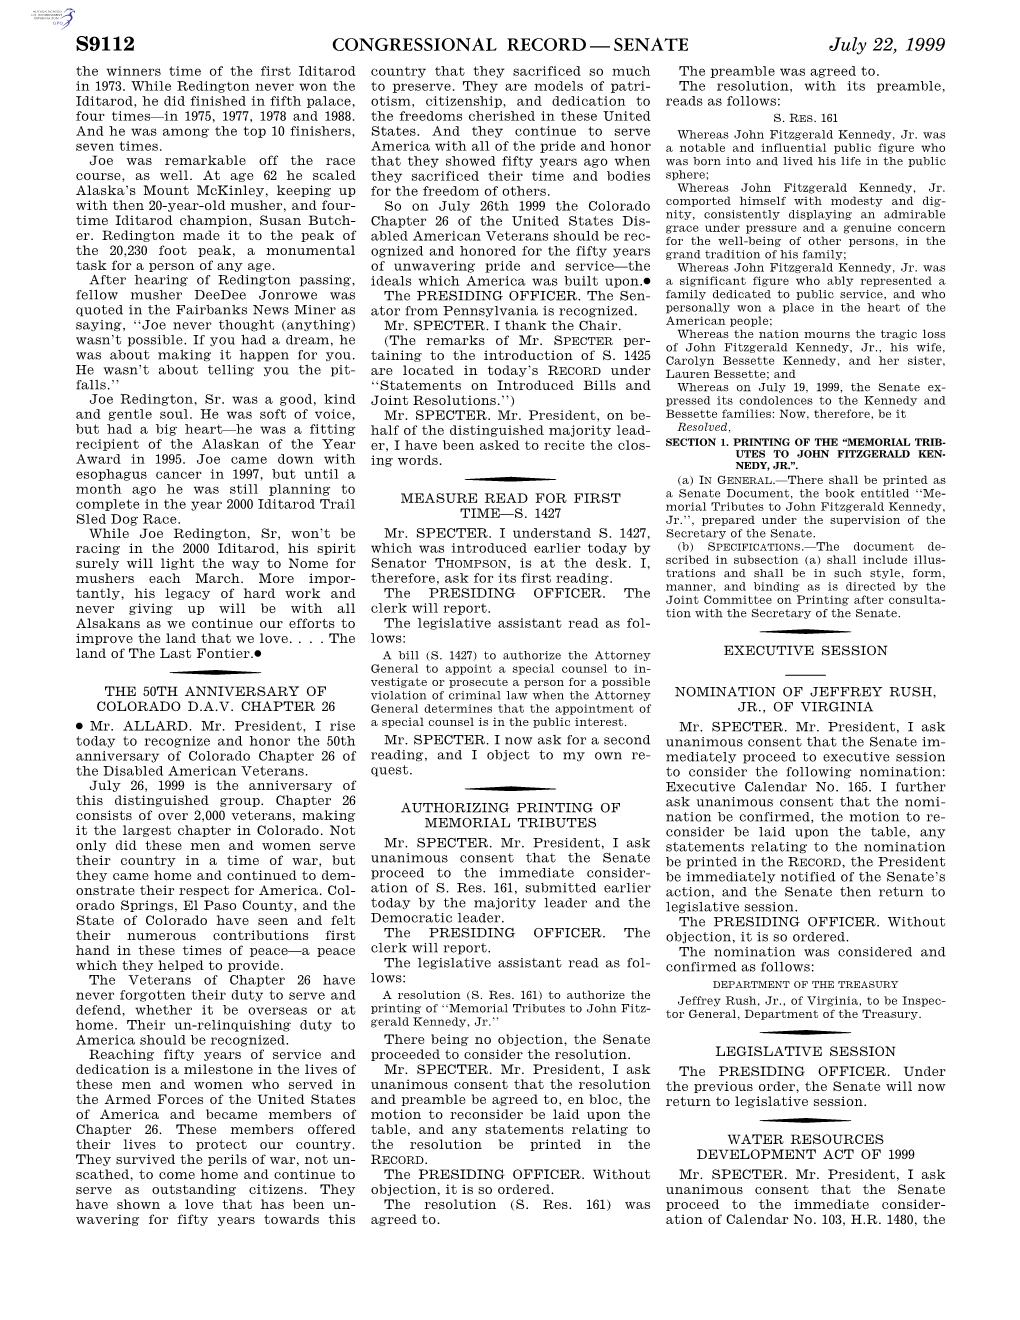 Congressional Record—Senate S9112